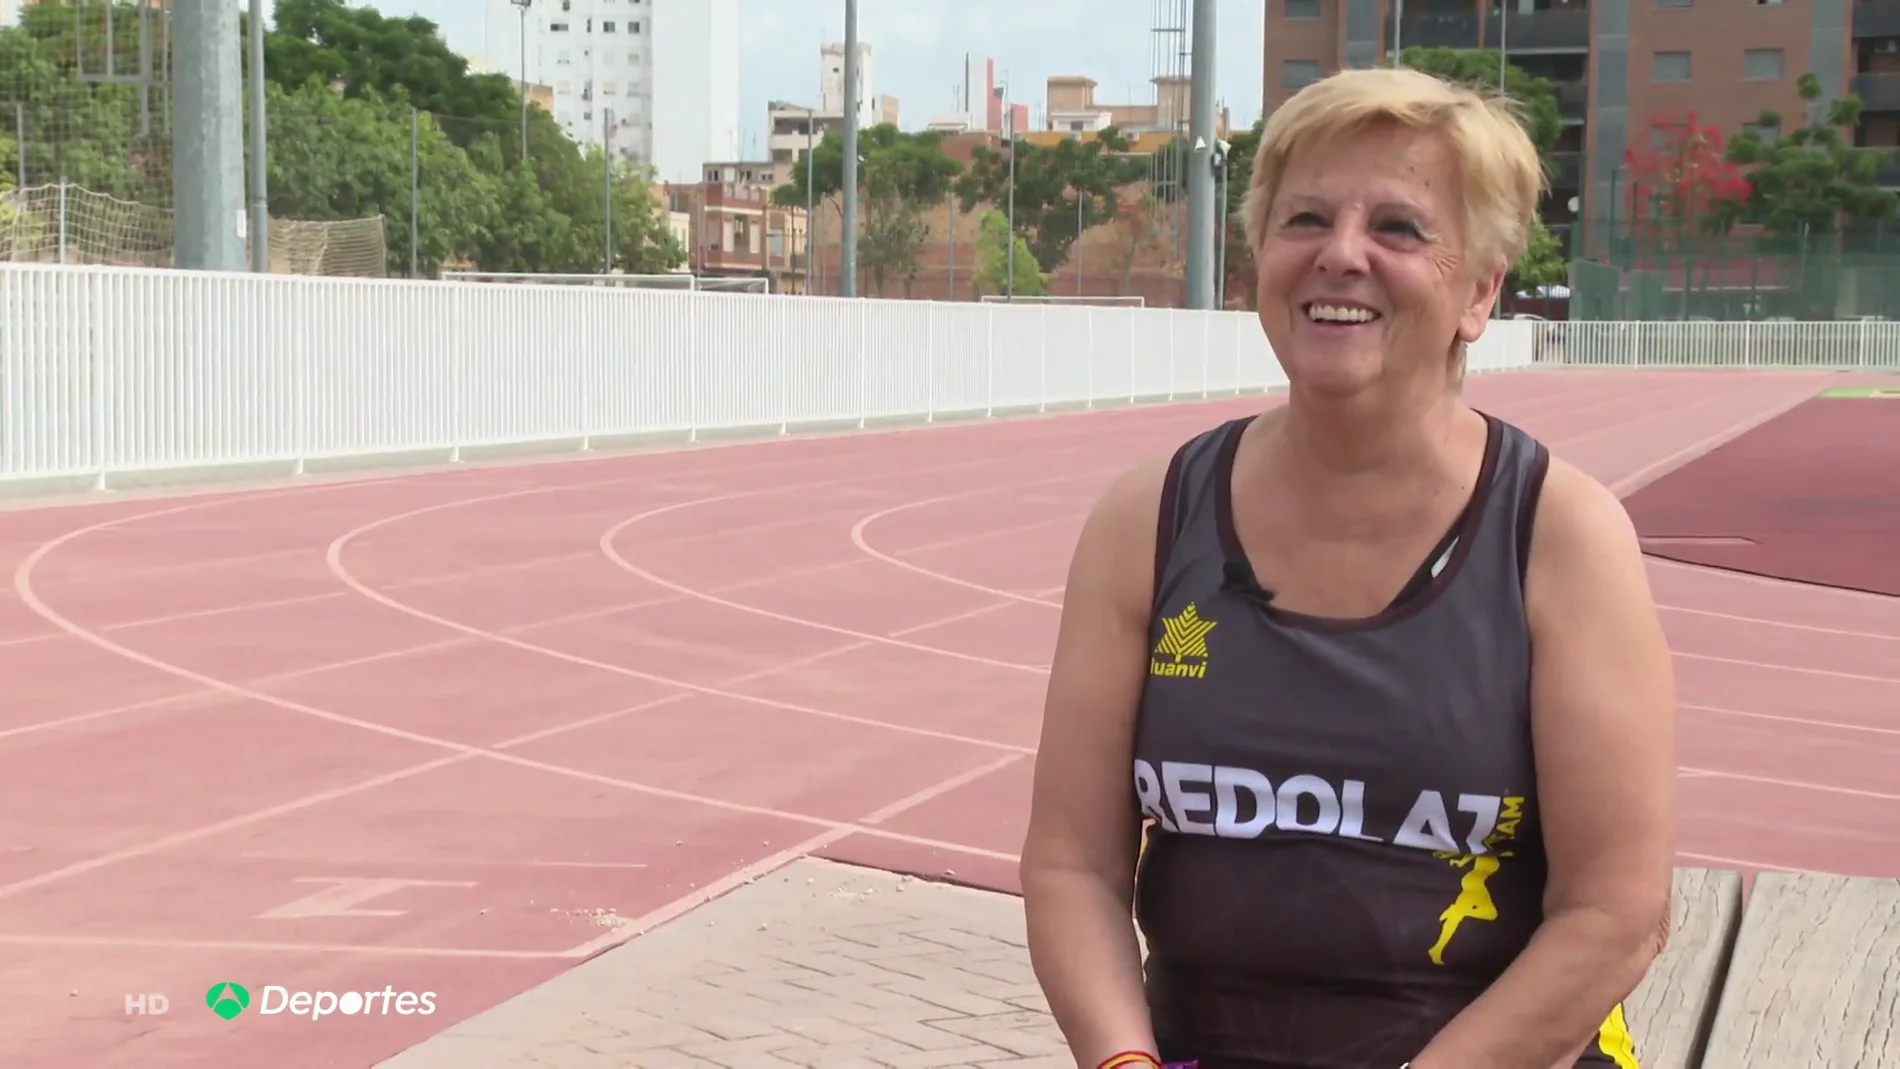 Rosa Esquerdo, la runner que no comenzó a competir hasta los 41 años por ser mujer: "